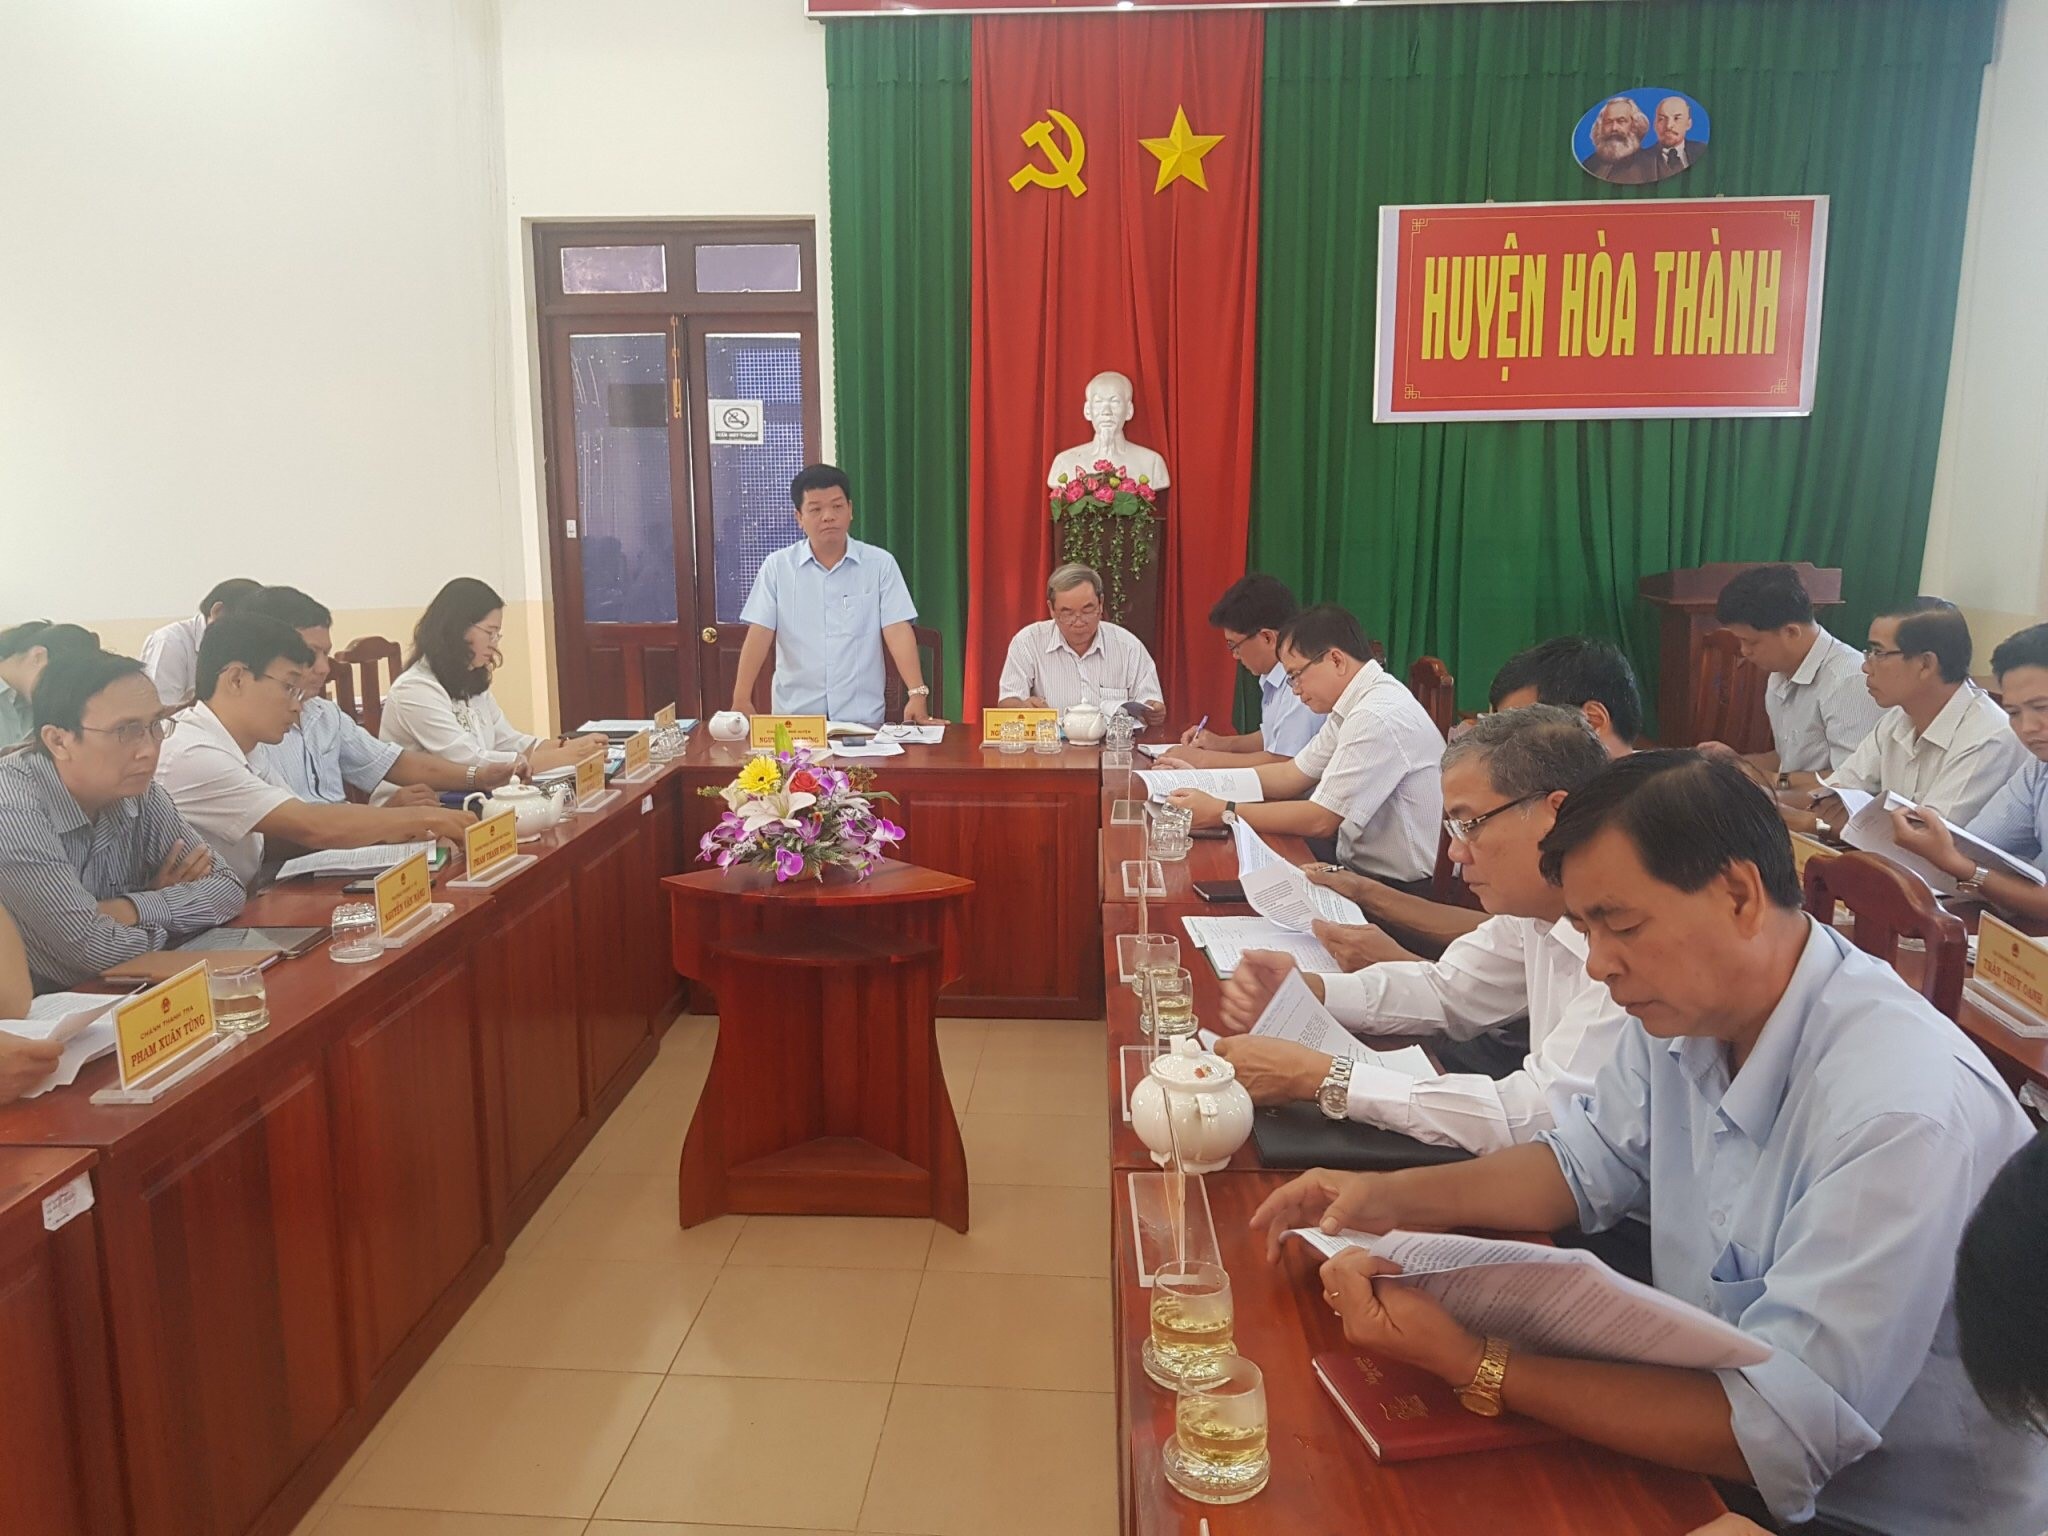 UBND huyện Hòa Thành tổ chức Hội nghị sơ kết  quý I năm 2019